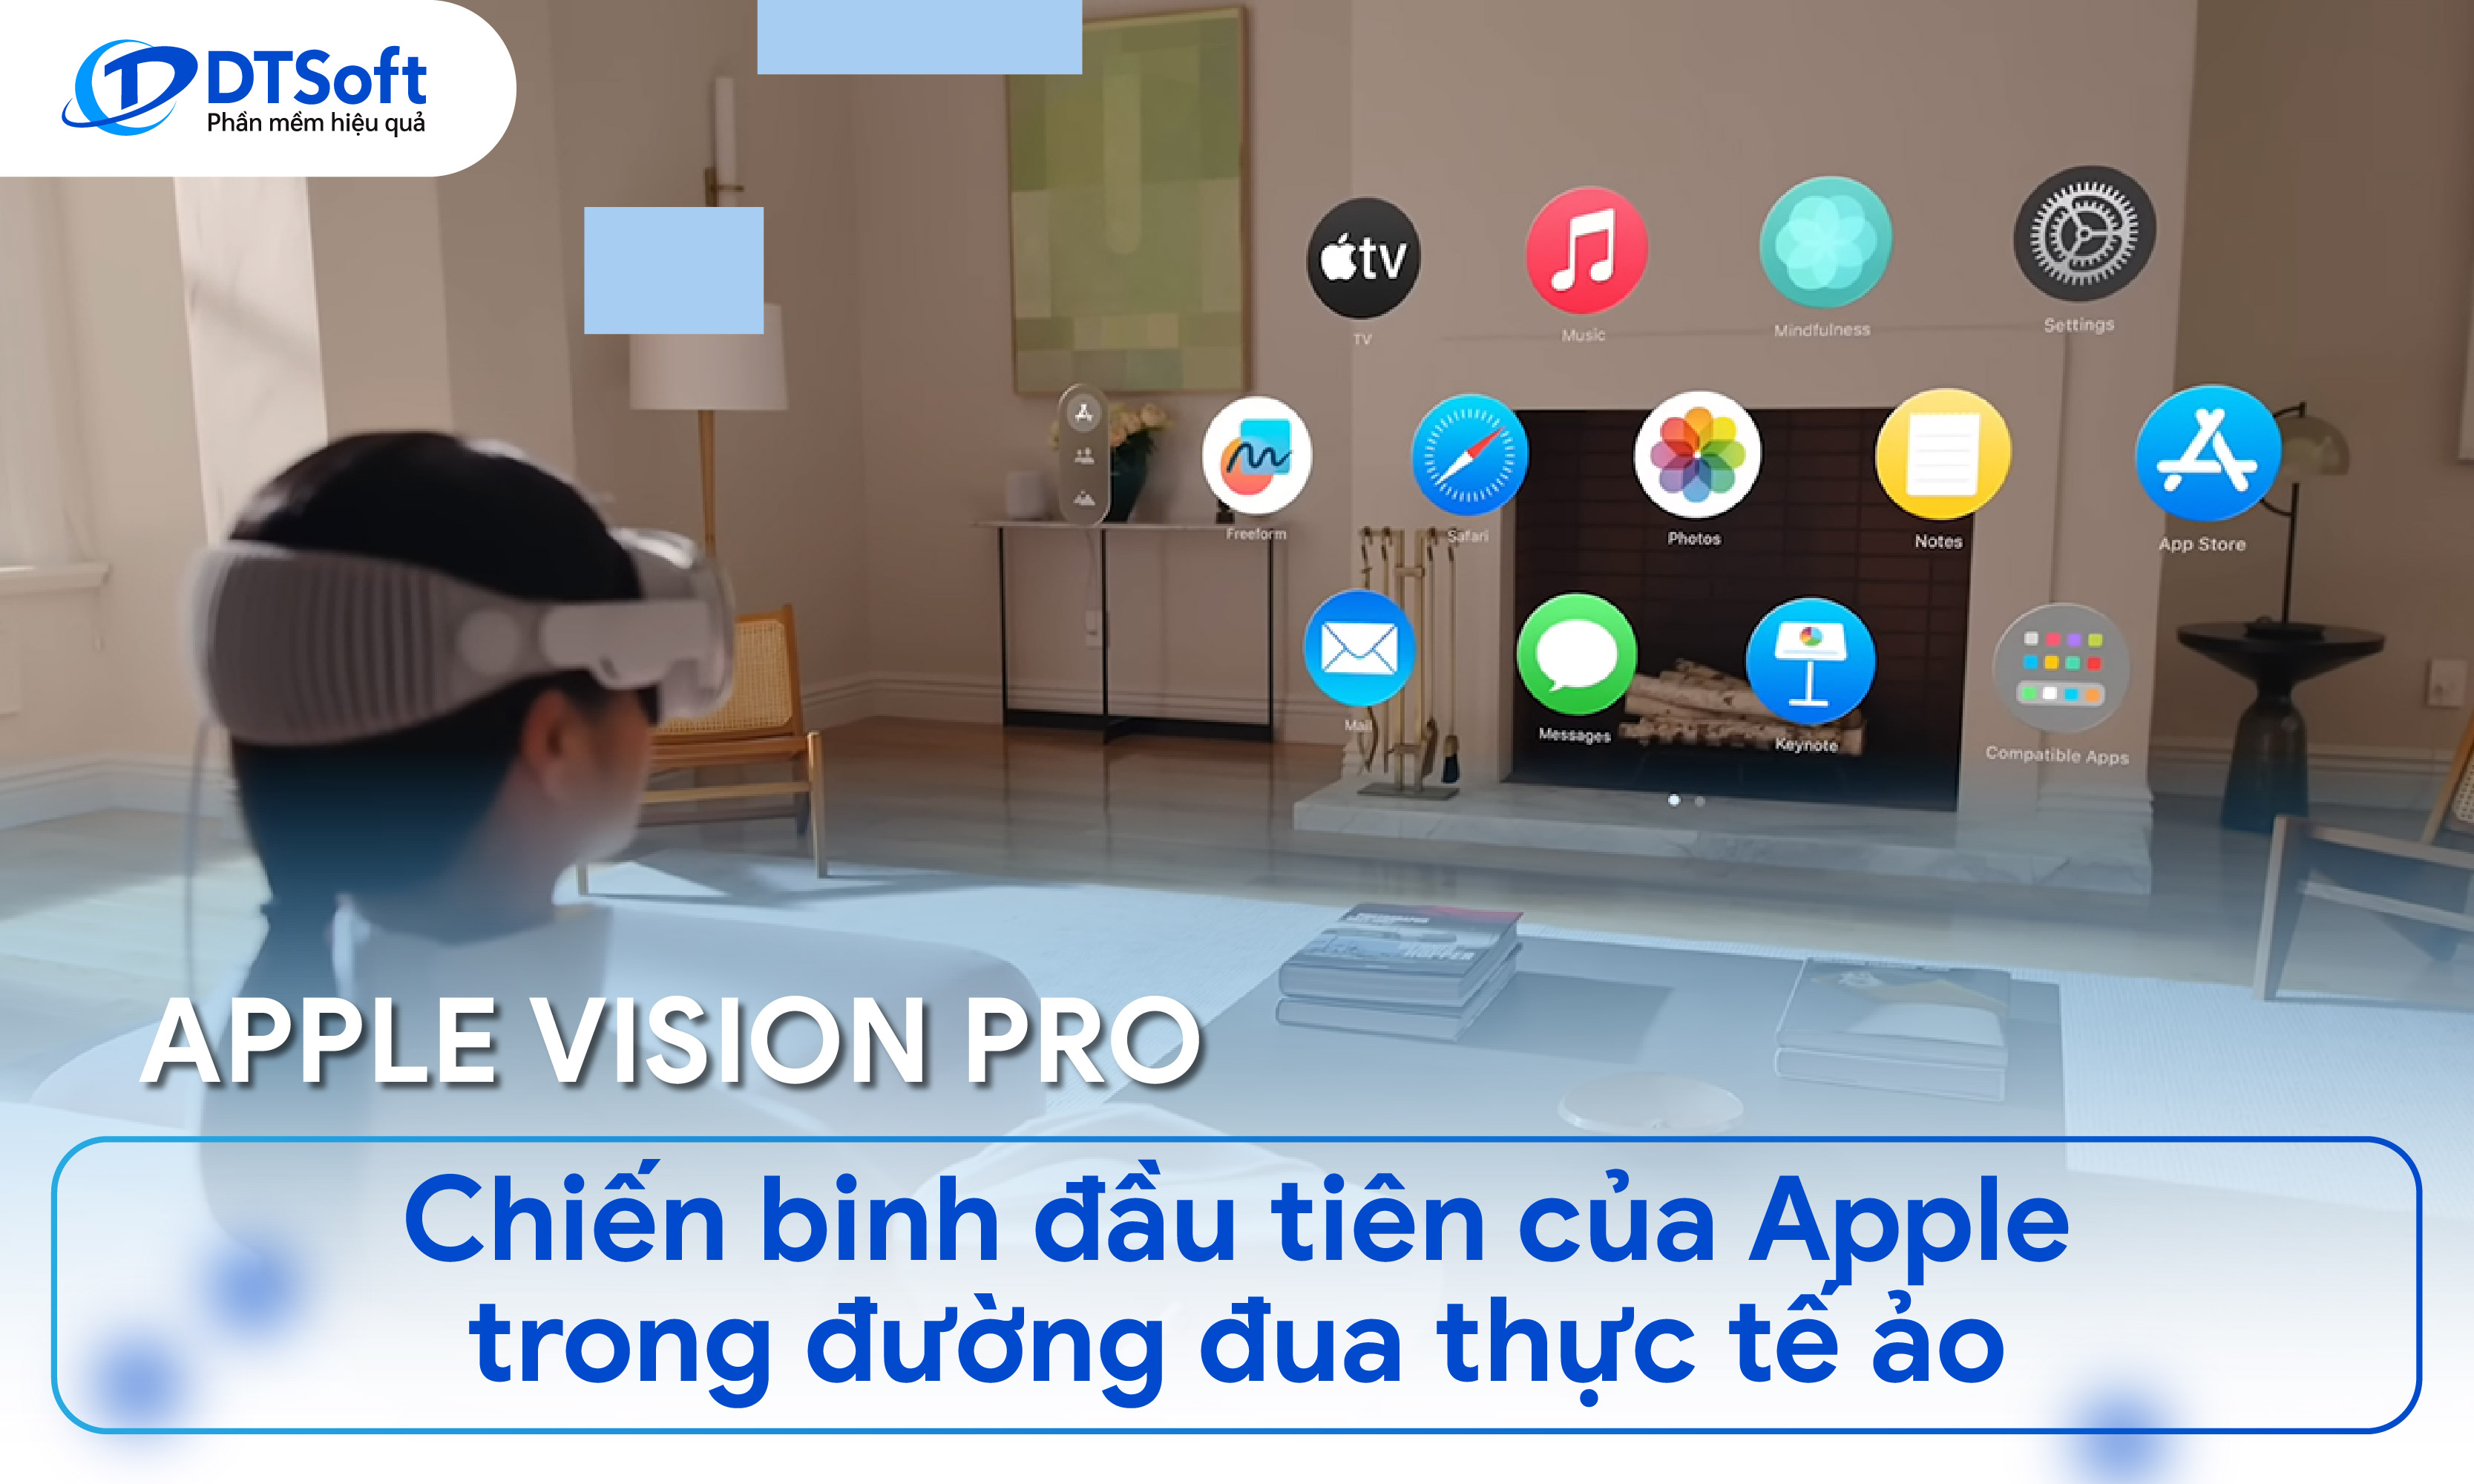 Vision Pro - Chiến binh đầu tiên của Apple trong đường đua thực tế ảo